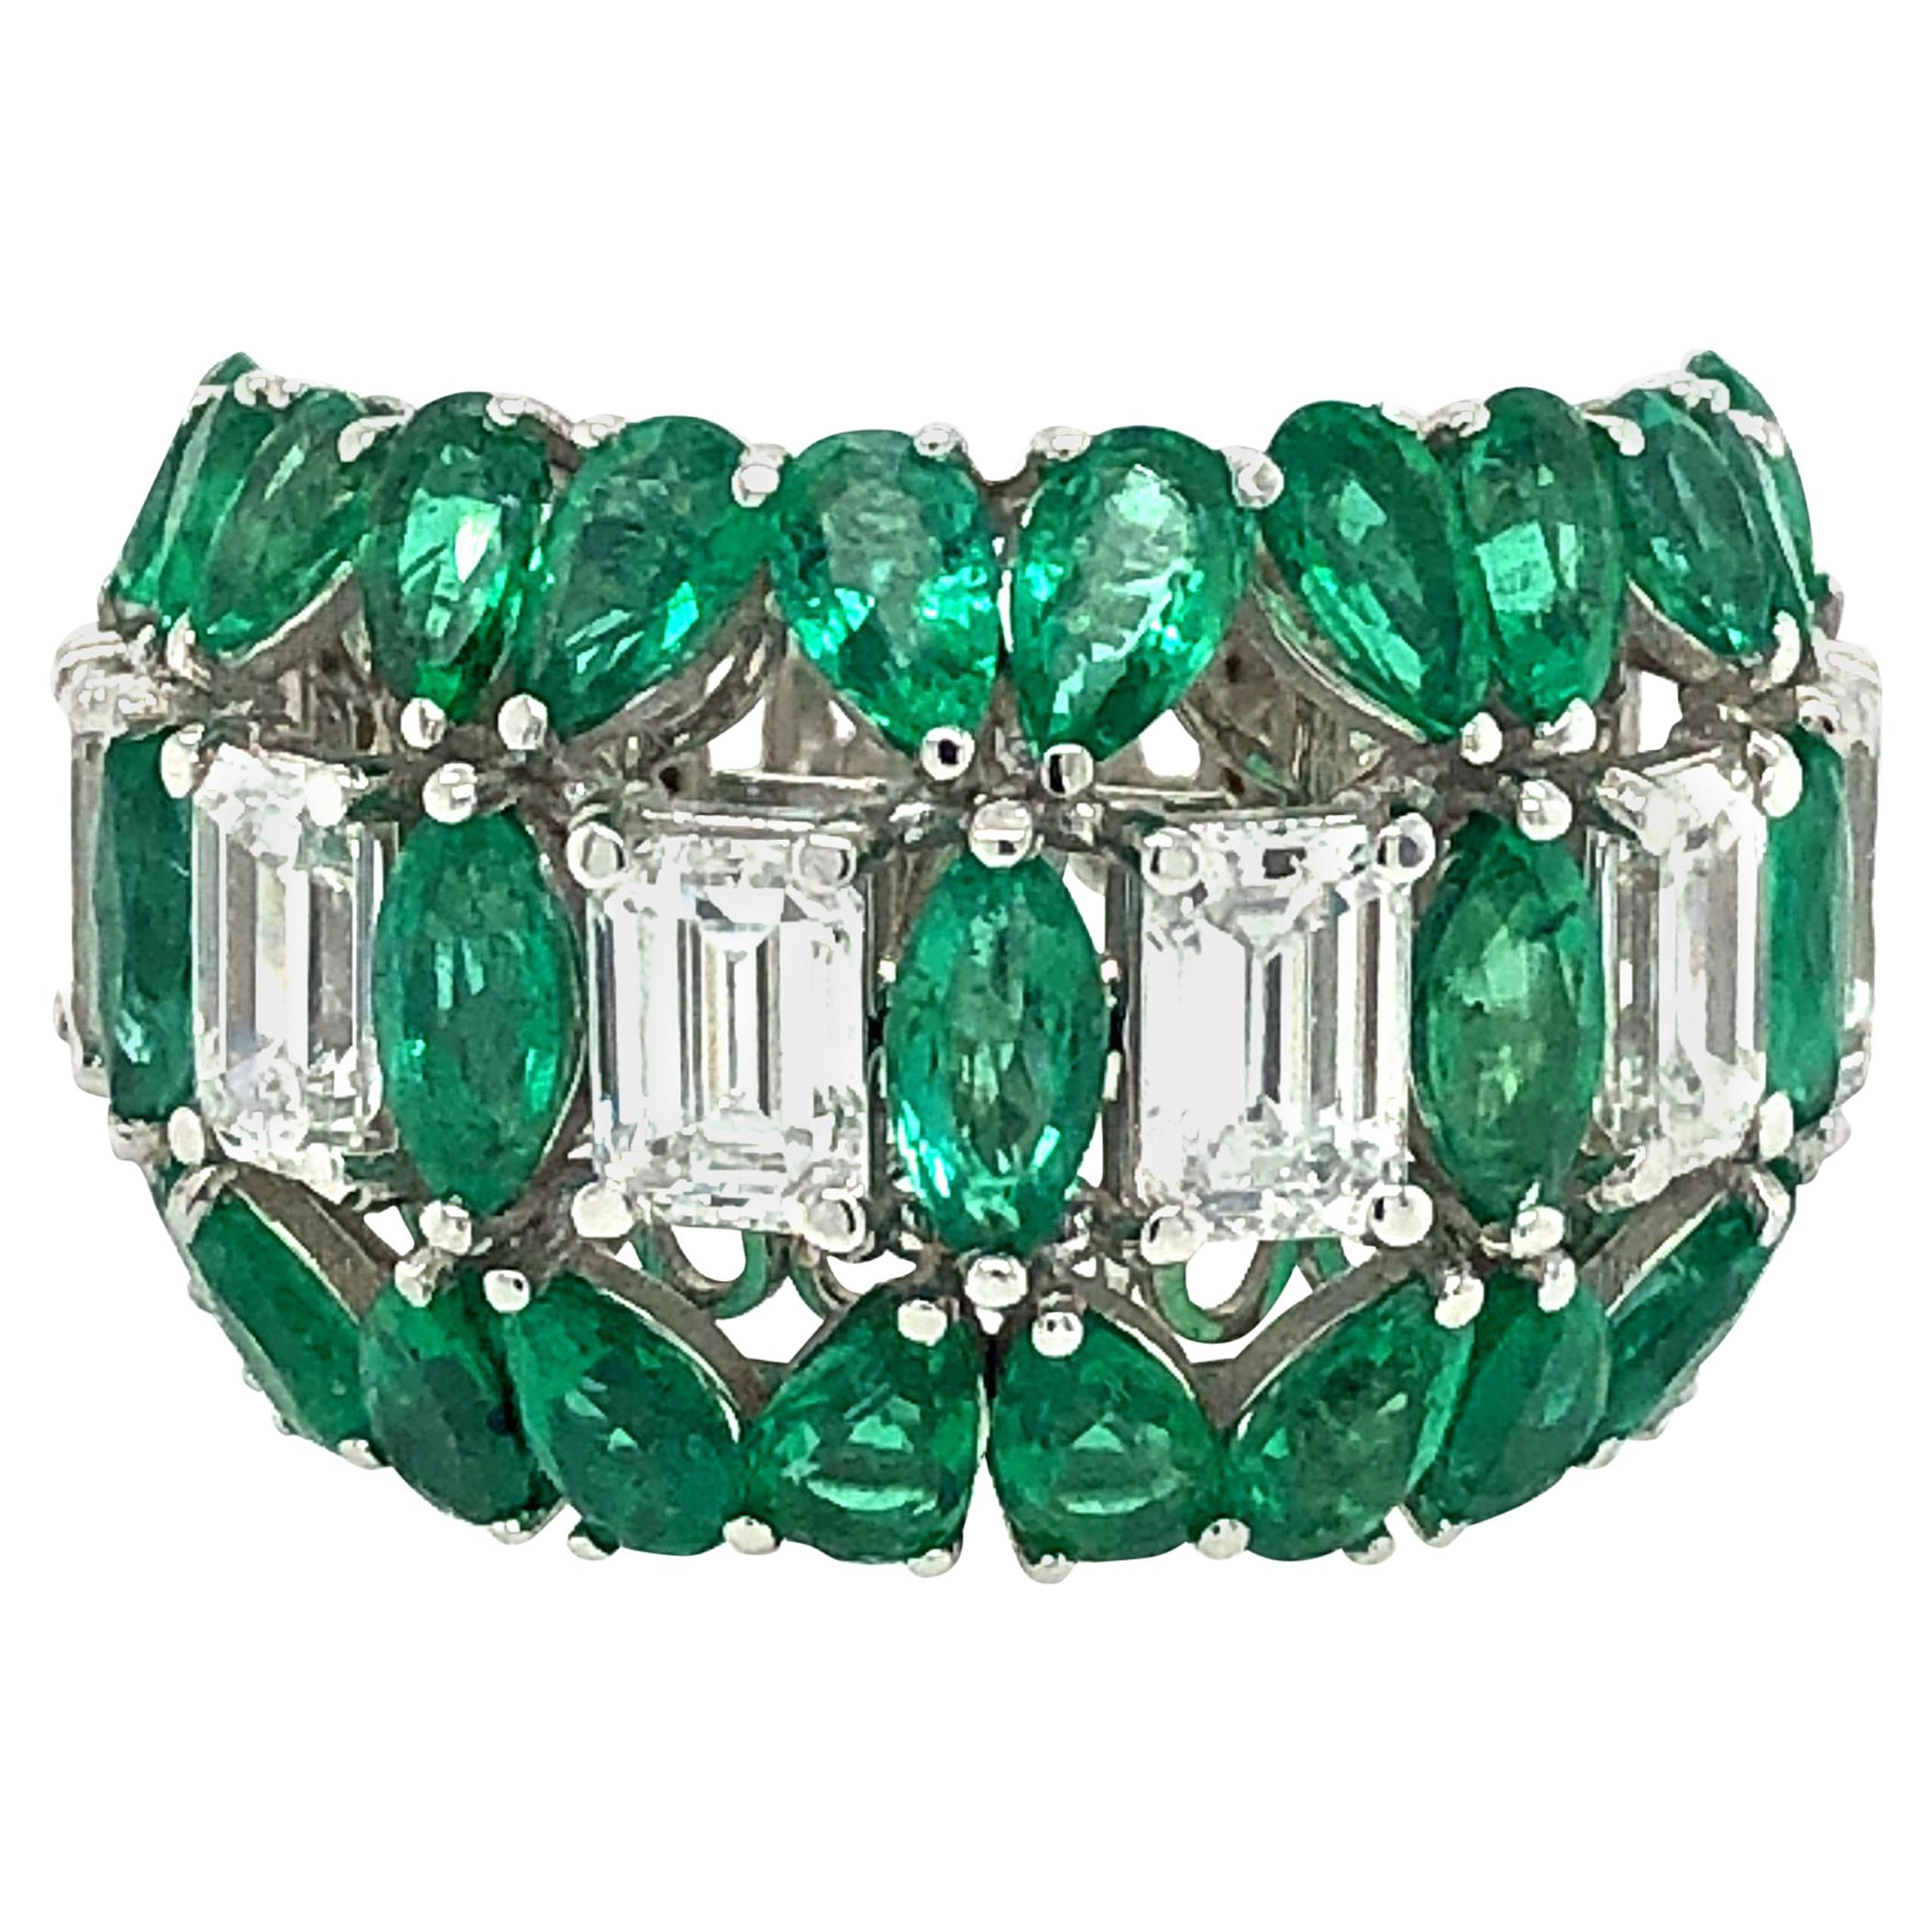 7 Carat Emerald and Diamond Ring 18 Karat Gold